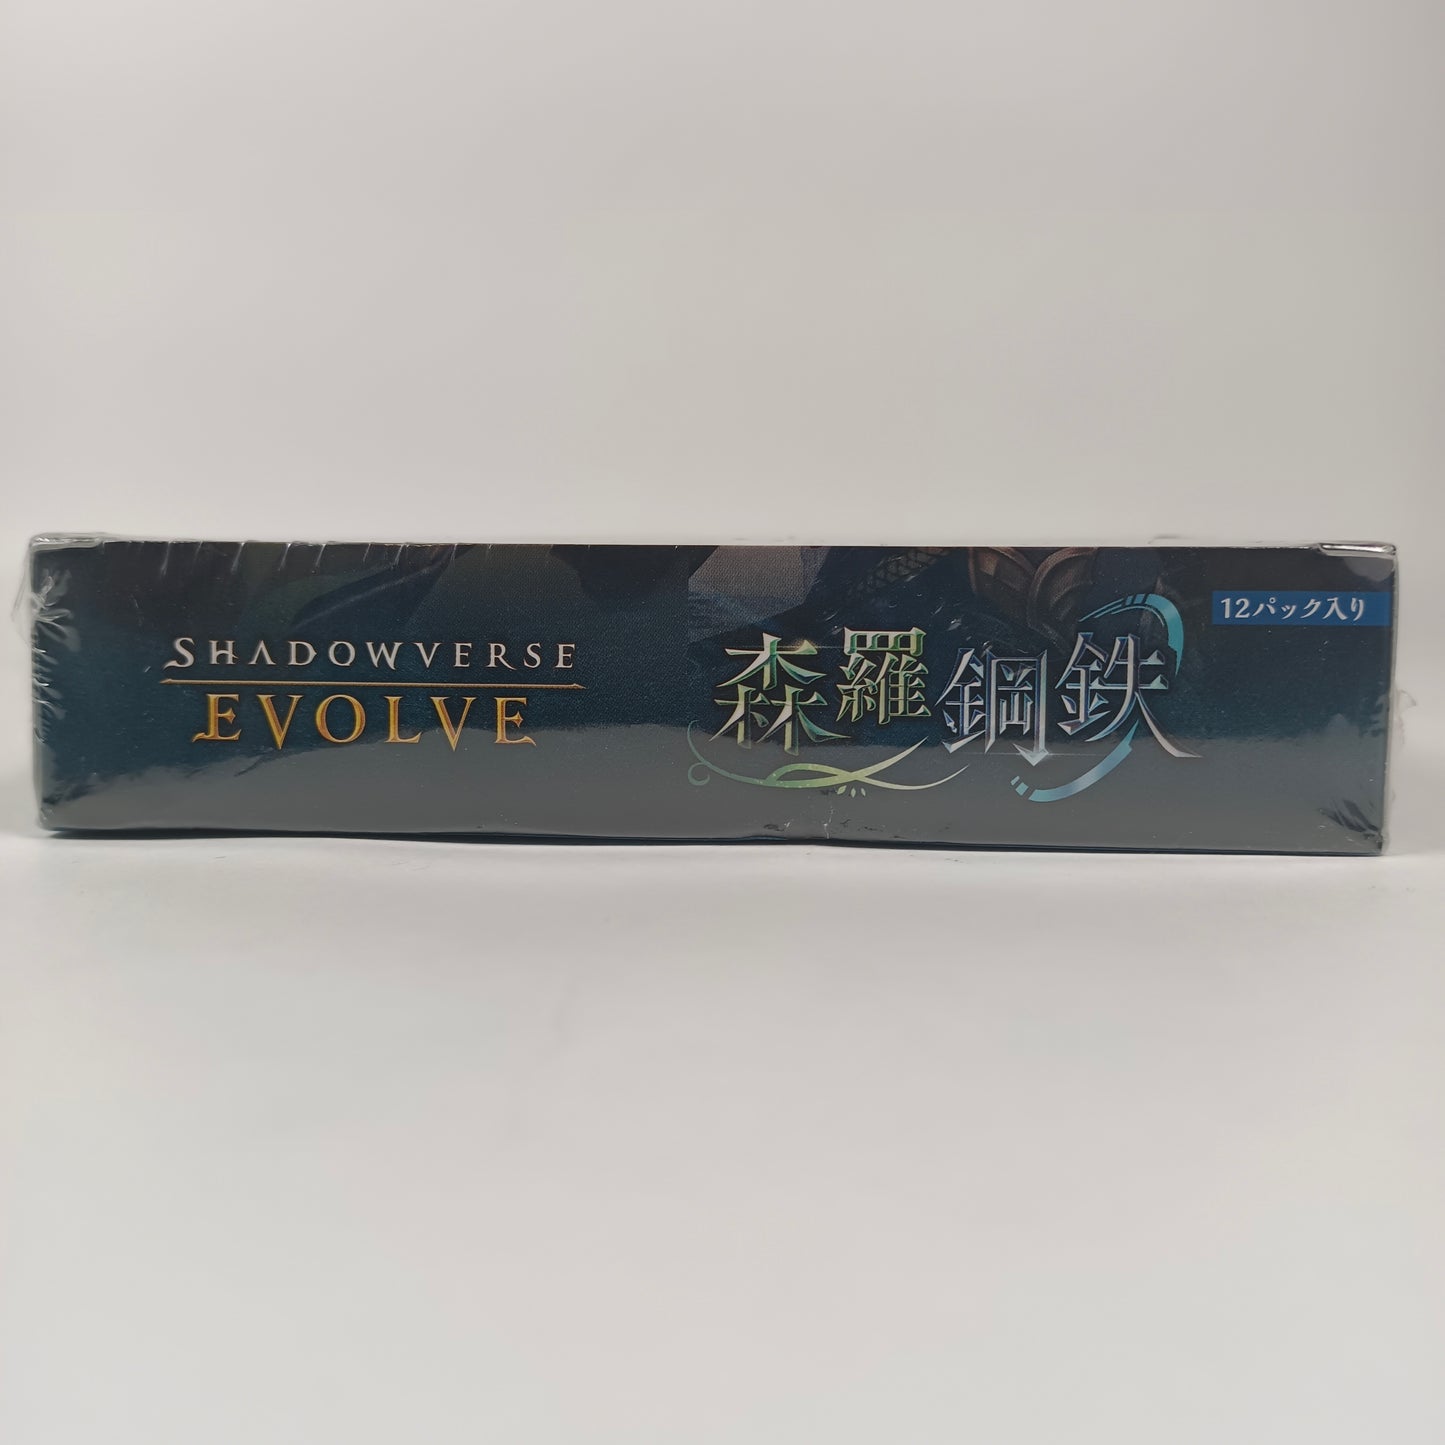 SHADOWVERSE EVOLVE Vol. 7 "SHINRA STEEL" BOX